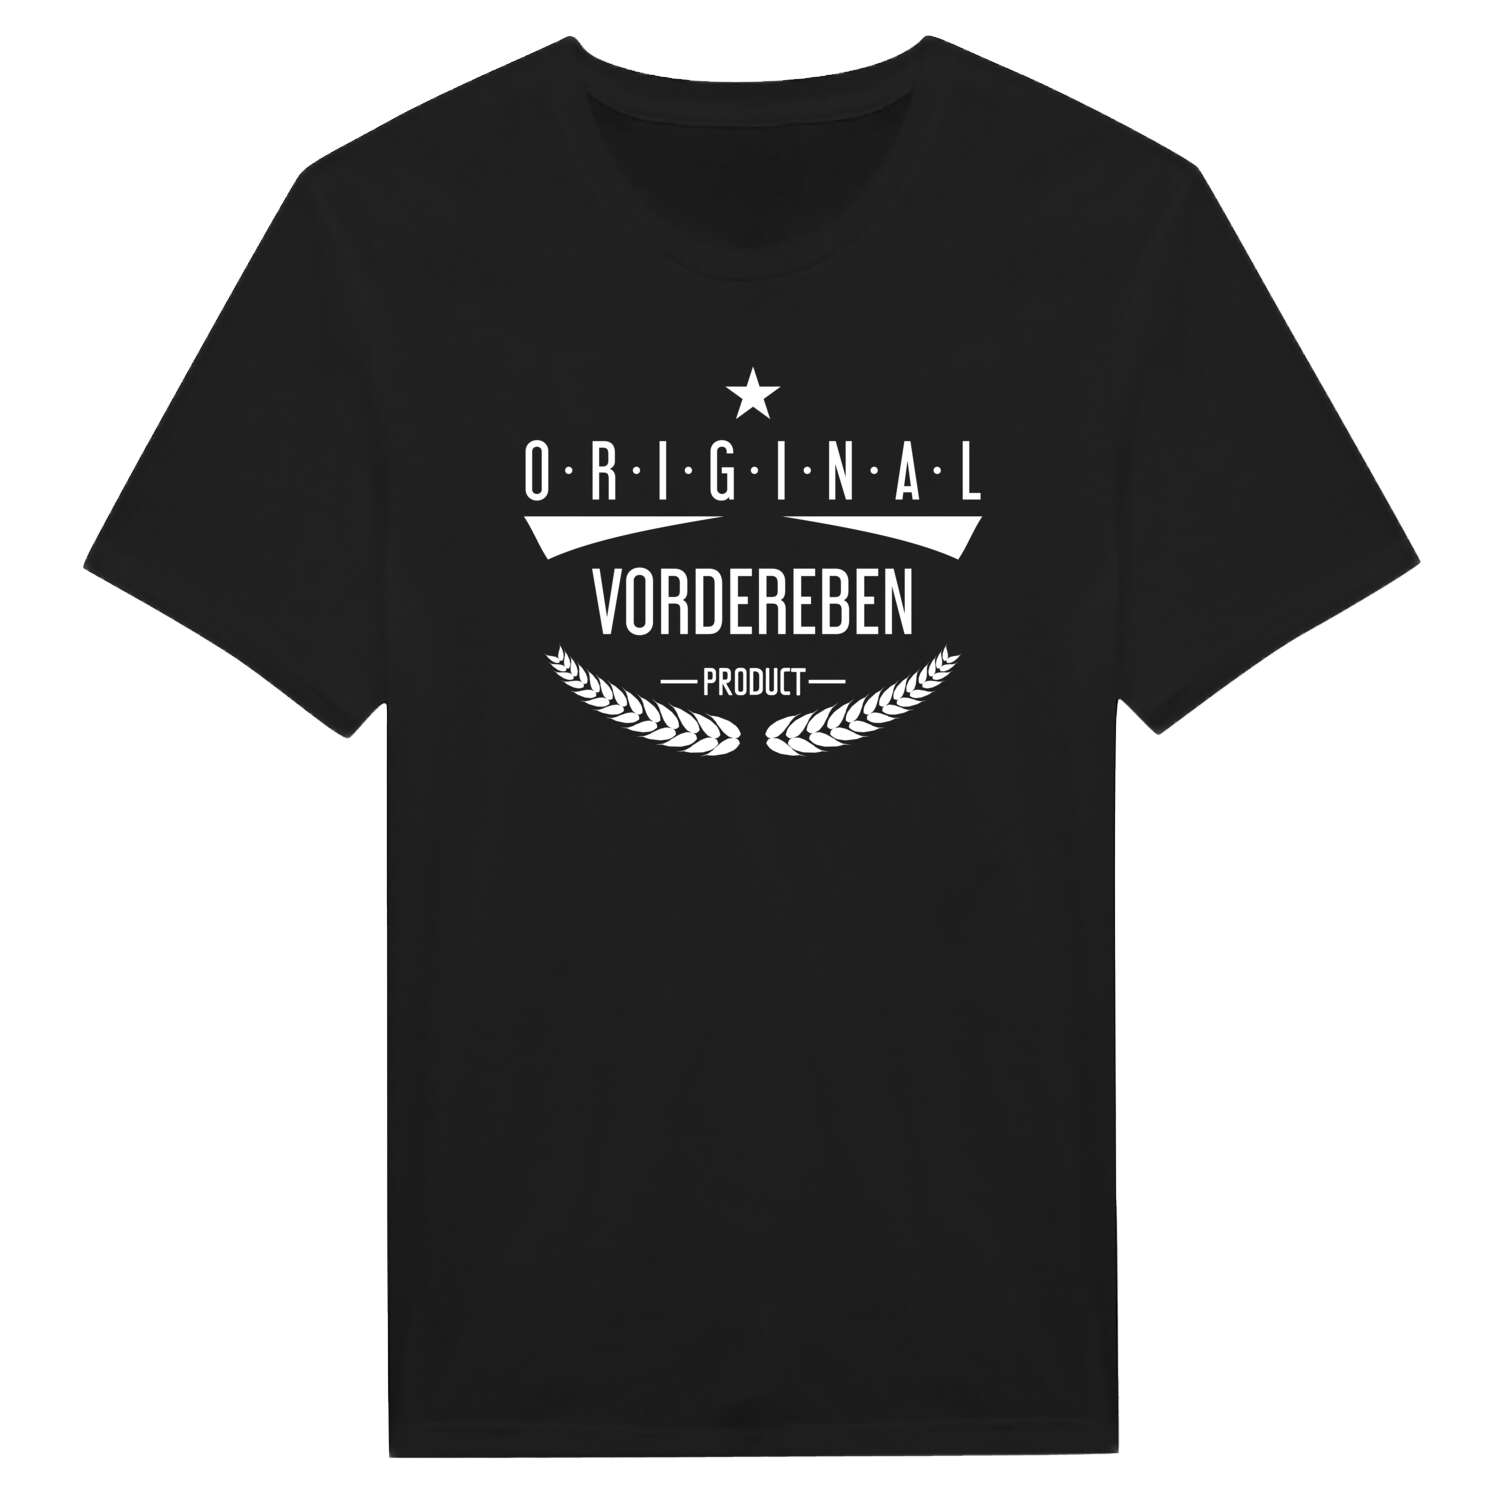 Vordereben T-Shirt »Original Product«